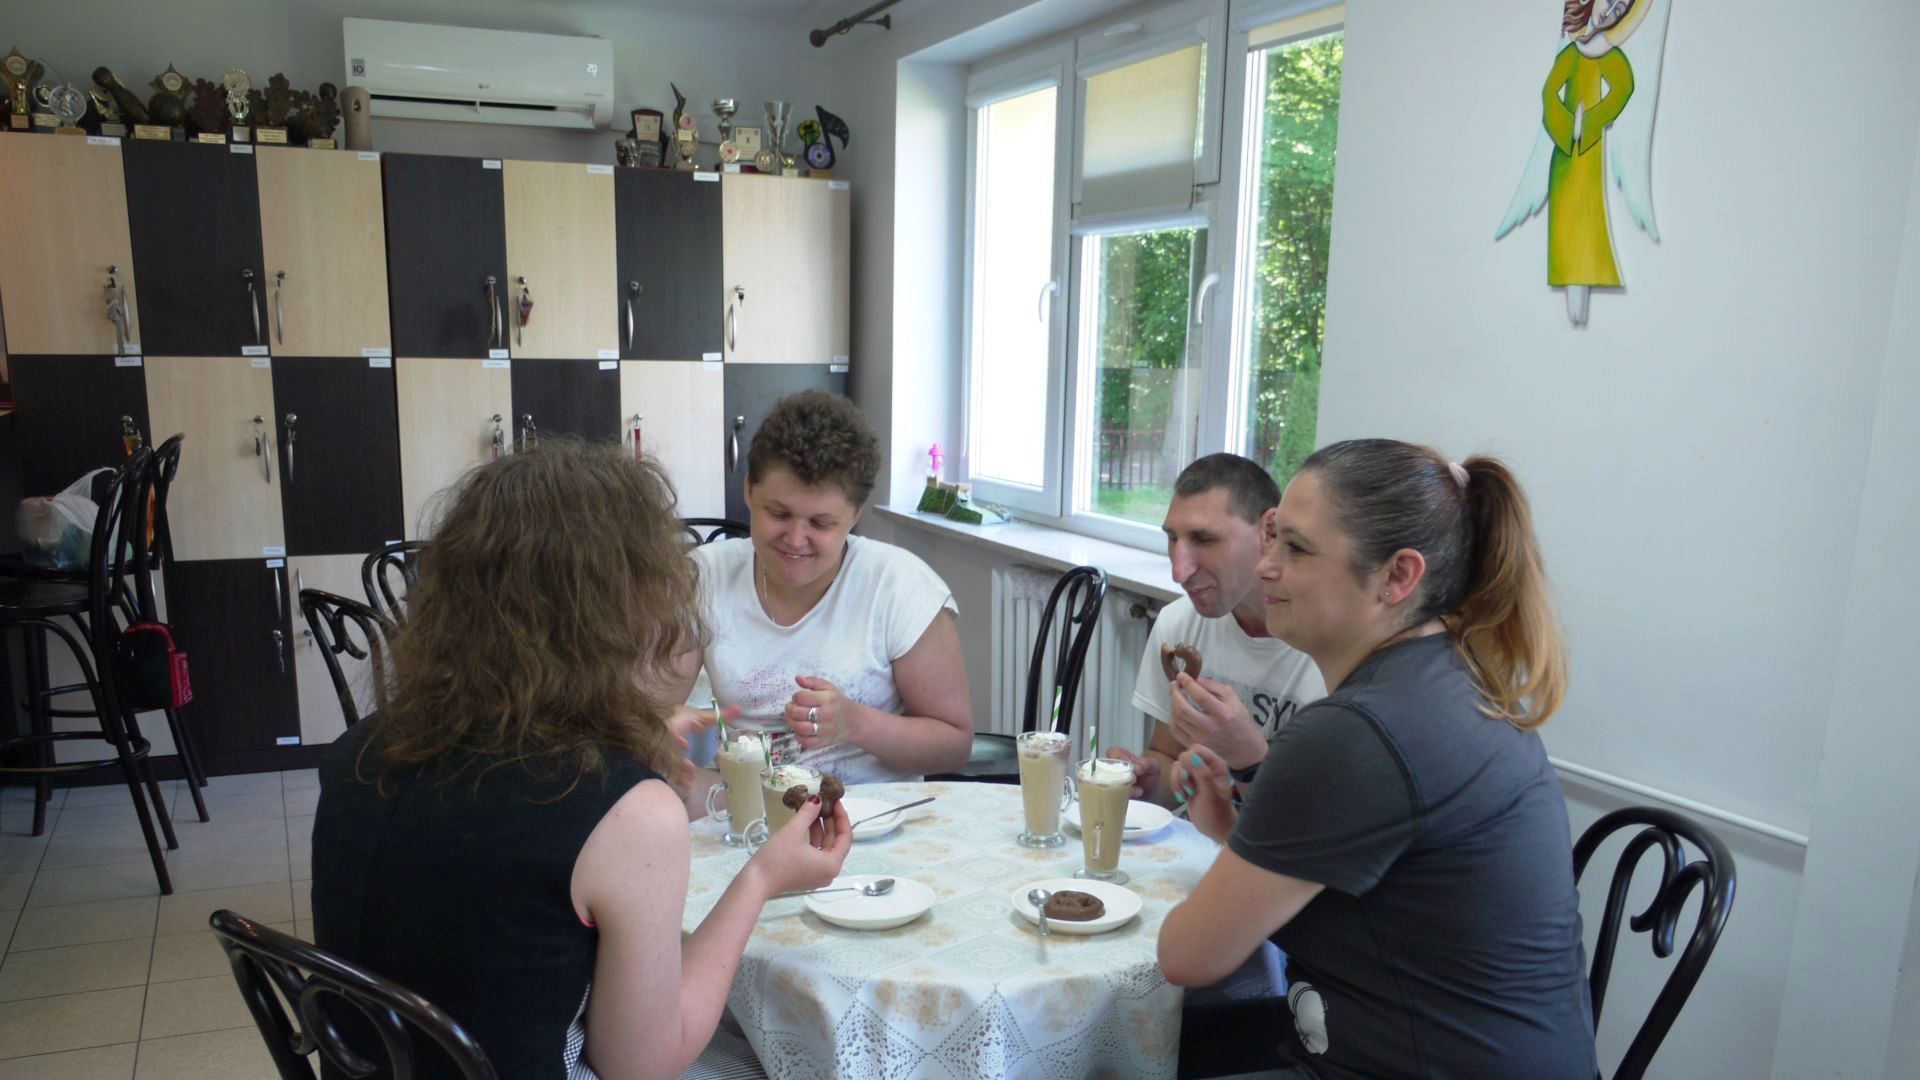 Uczestnicy wraz z terapeutą podczas picia kawy przy stoliku w Art.-kawiarni.